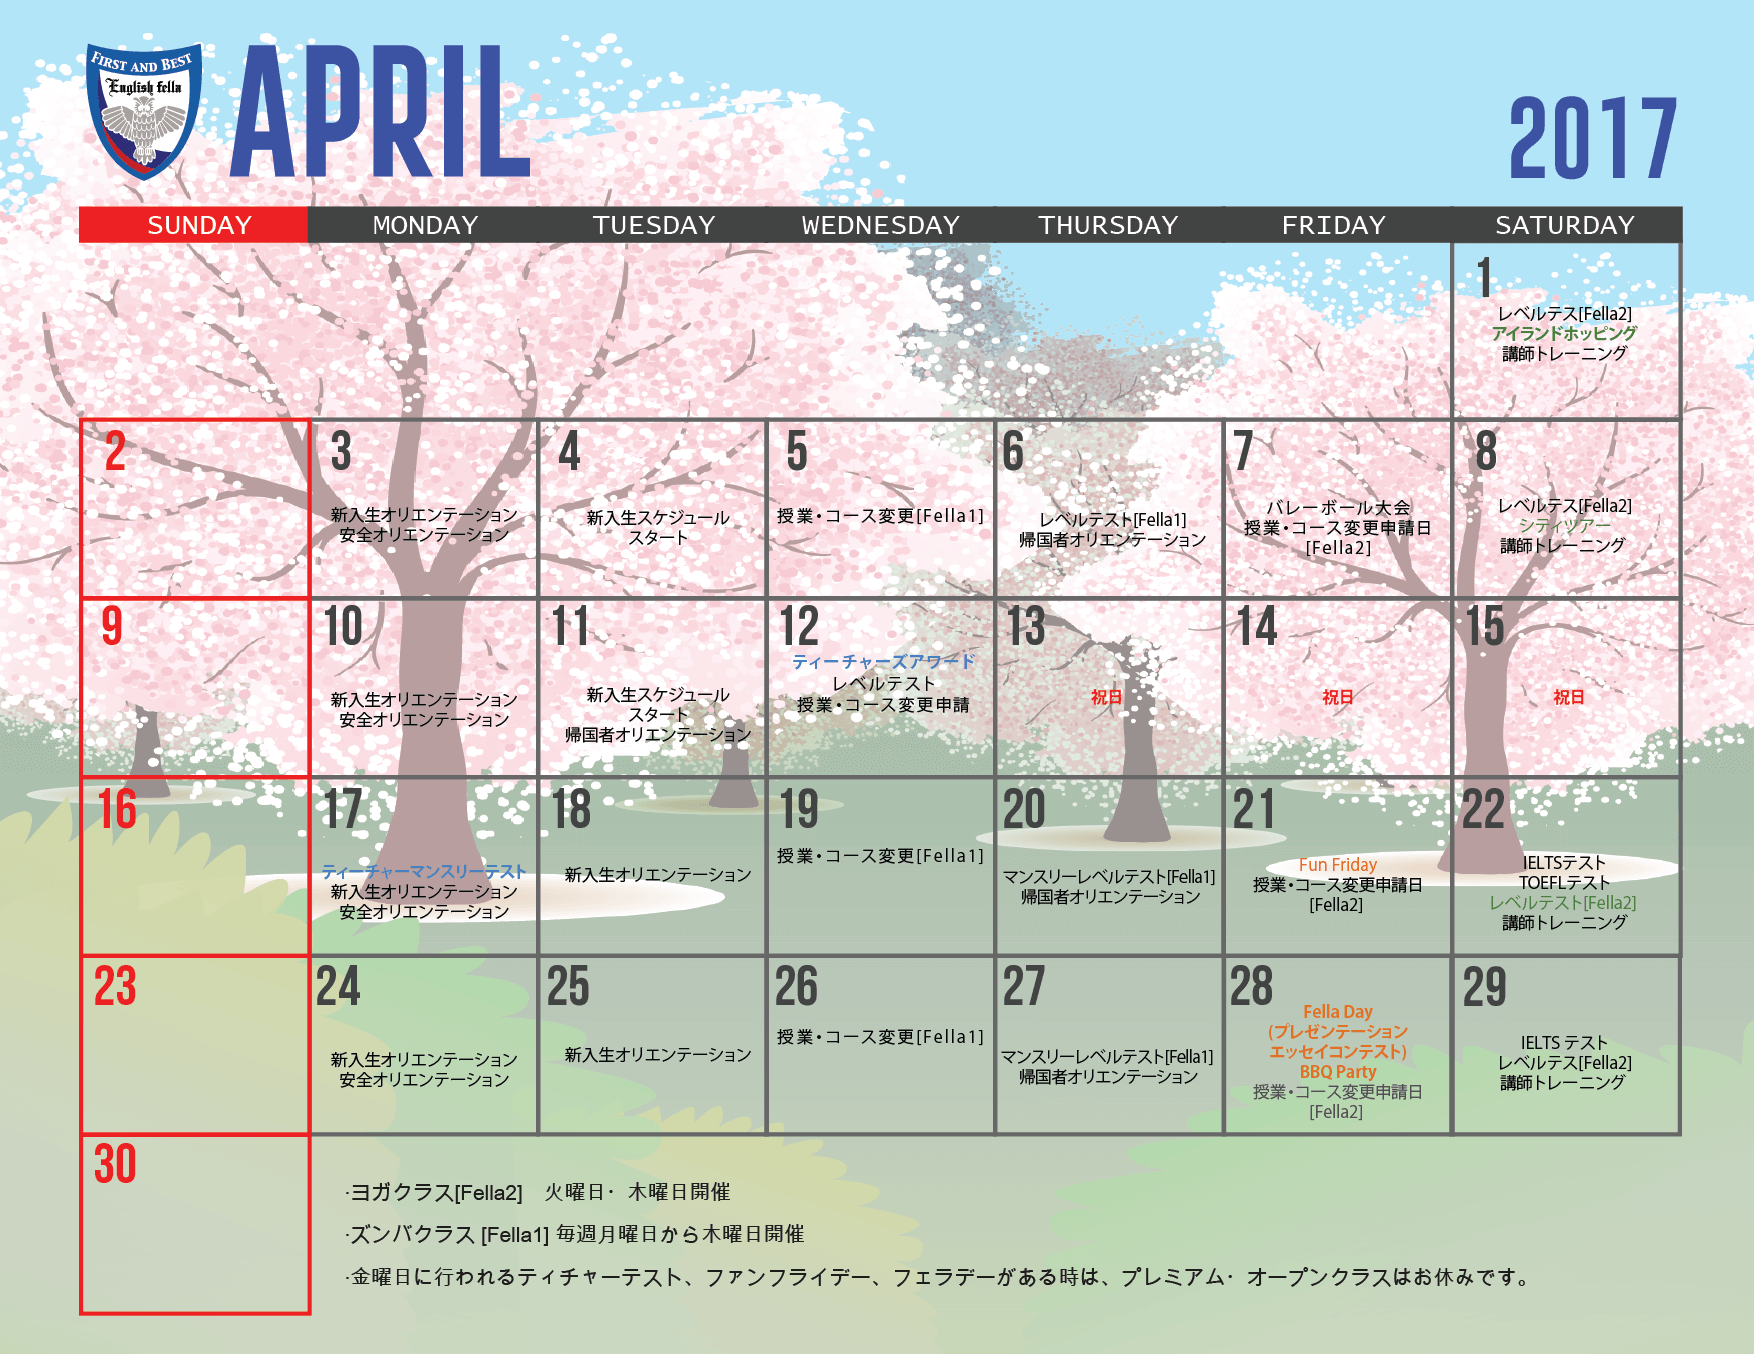 2017 calendar April JP.png